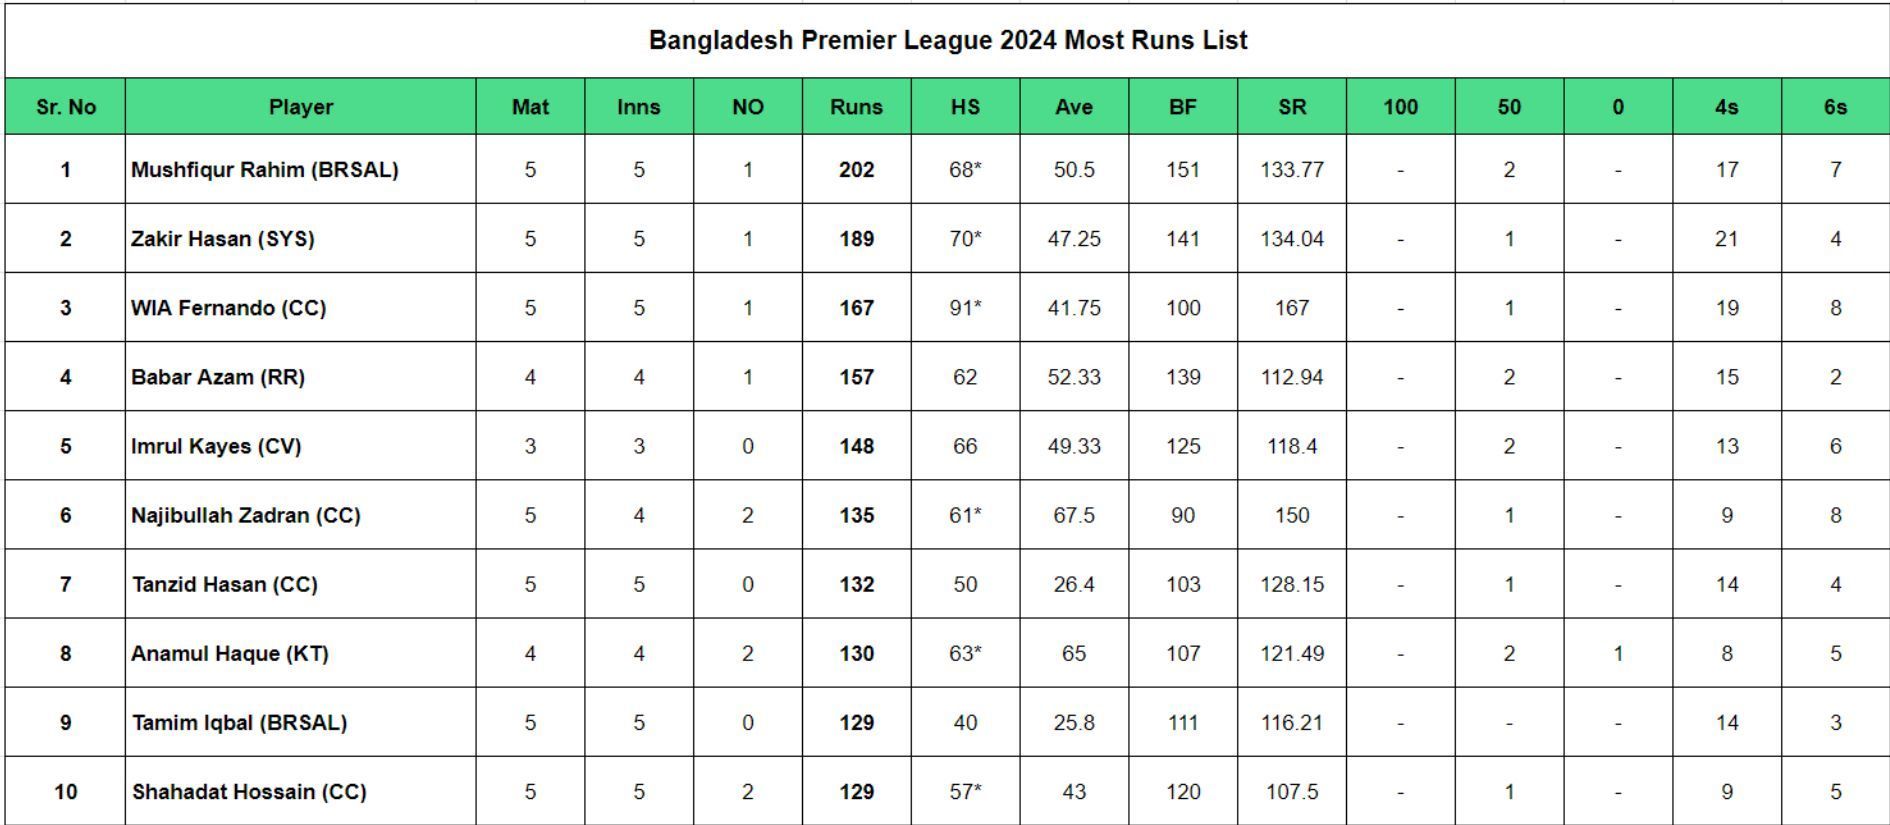 Bangladesh Premier League 2024 Most Runs List updated after Match 16